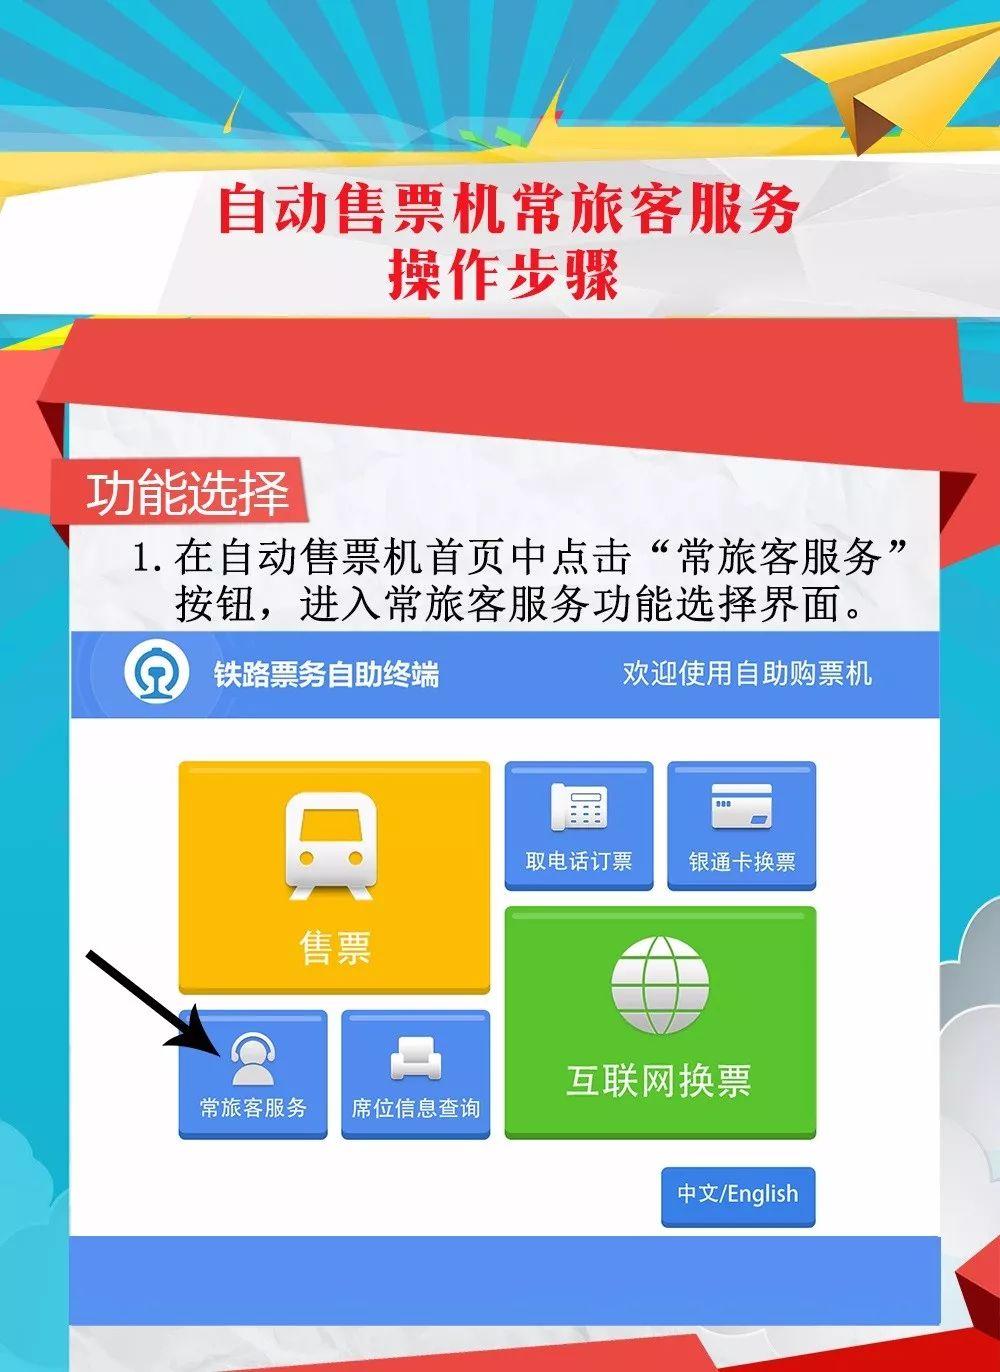 汉中高铁自动售票机,操作流程,人手一份!